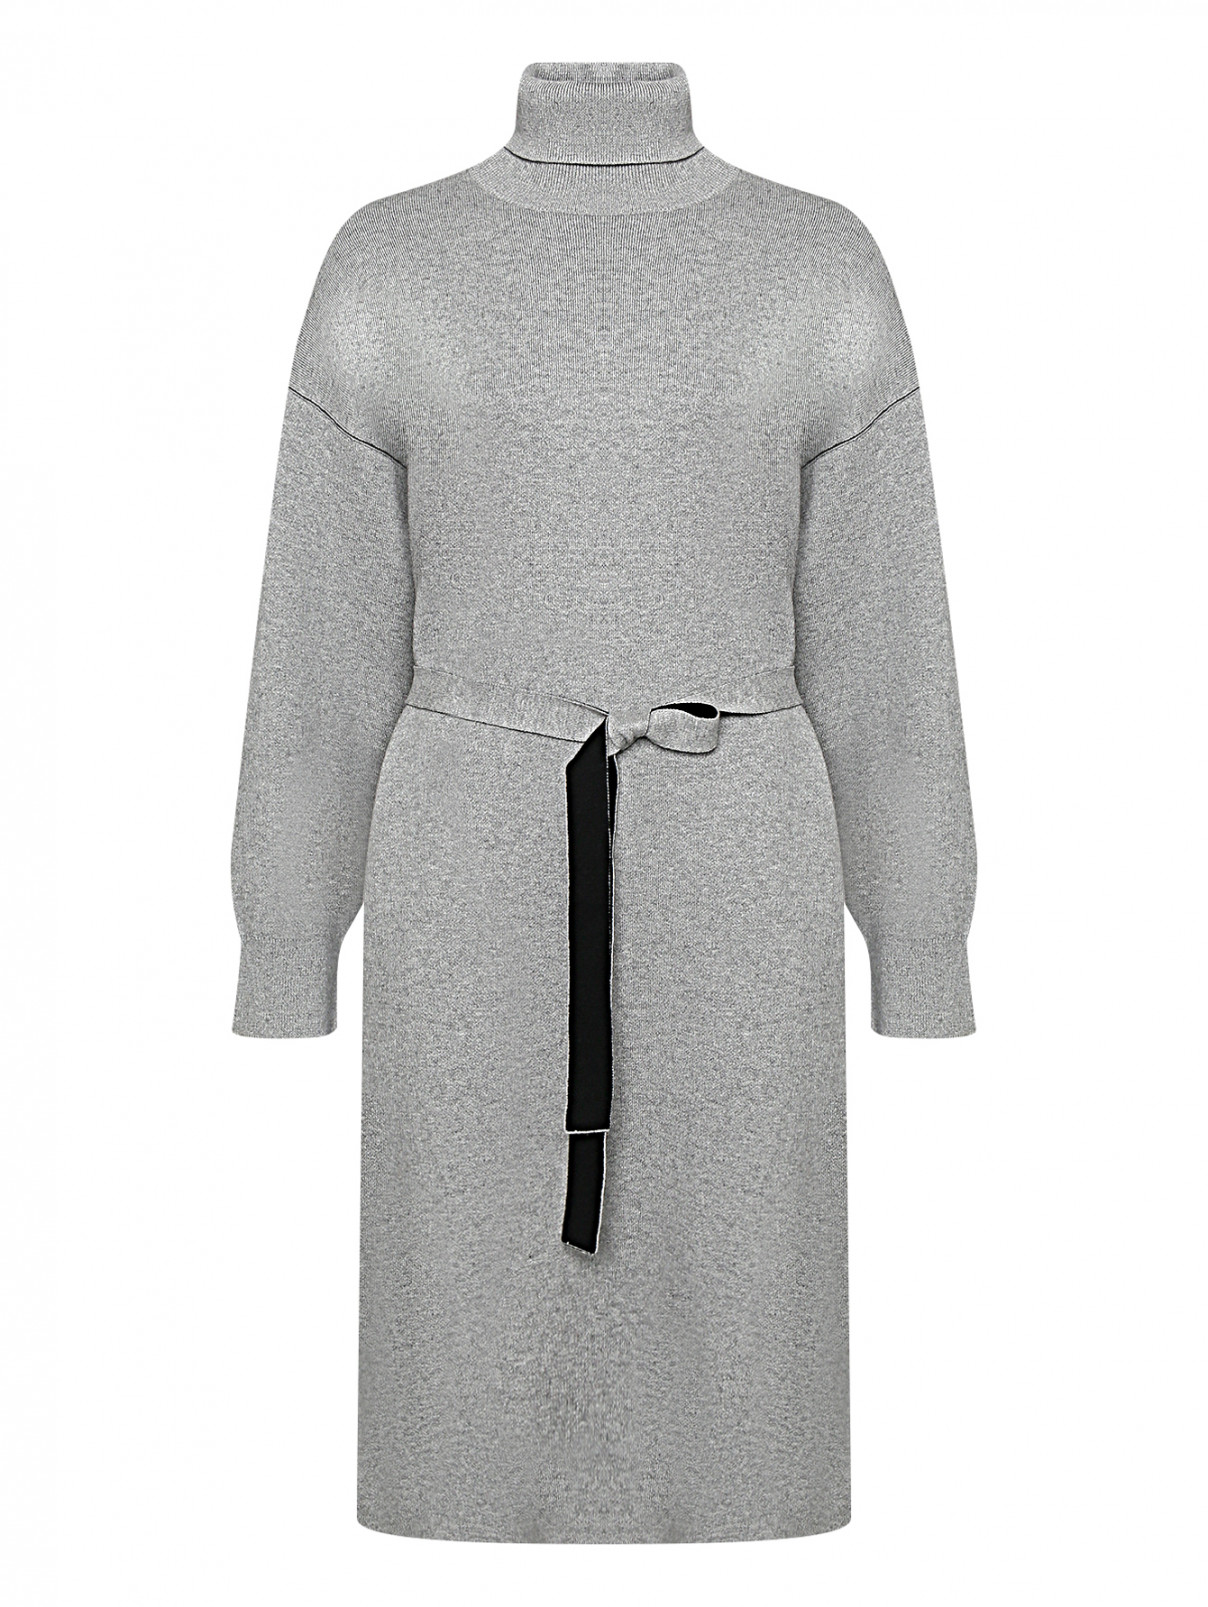 Трикотажное платье из хлопка с поясом Proenza Schouler  –  Общий вид  – Цвет:  Серый